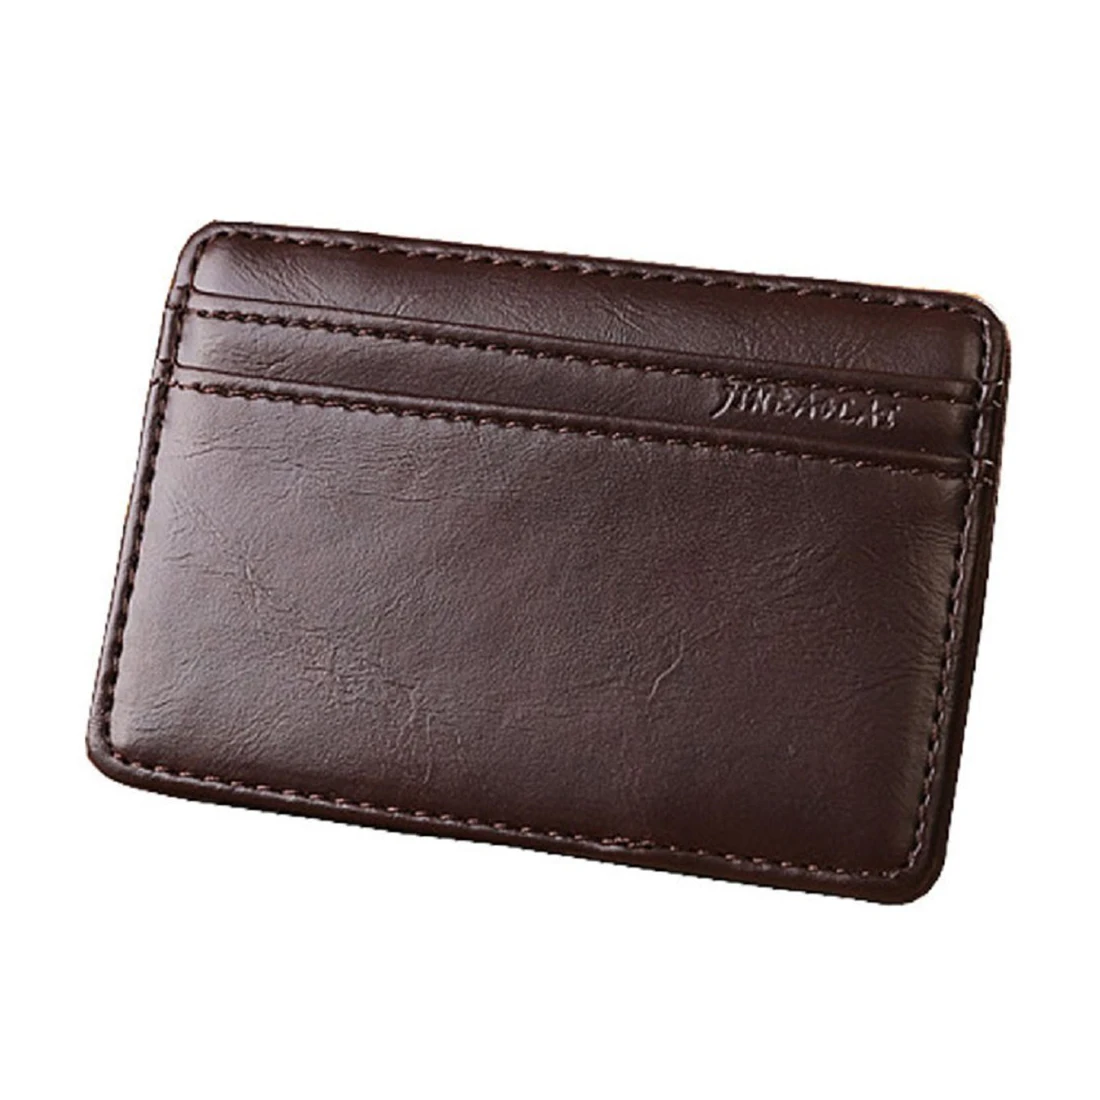 Бизнес-клубе Jinbaolai Мини Магия нейтральный двойные бумажник сумка кошелек Поддержка карт роскошные кожаные (кофе темно-)